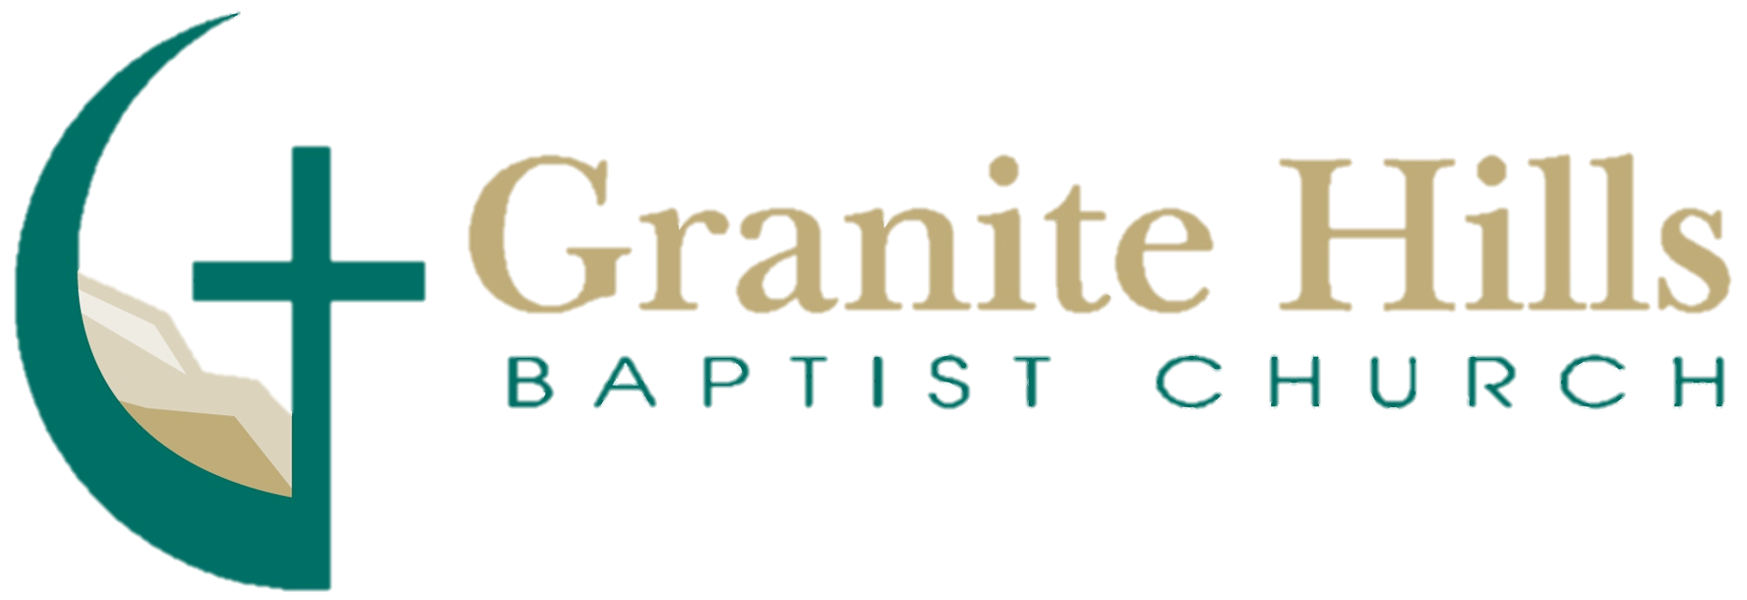 Granite Hills Baptist Church